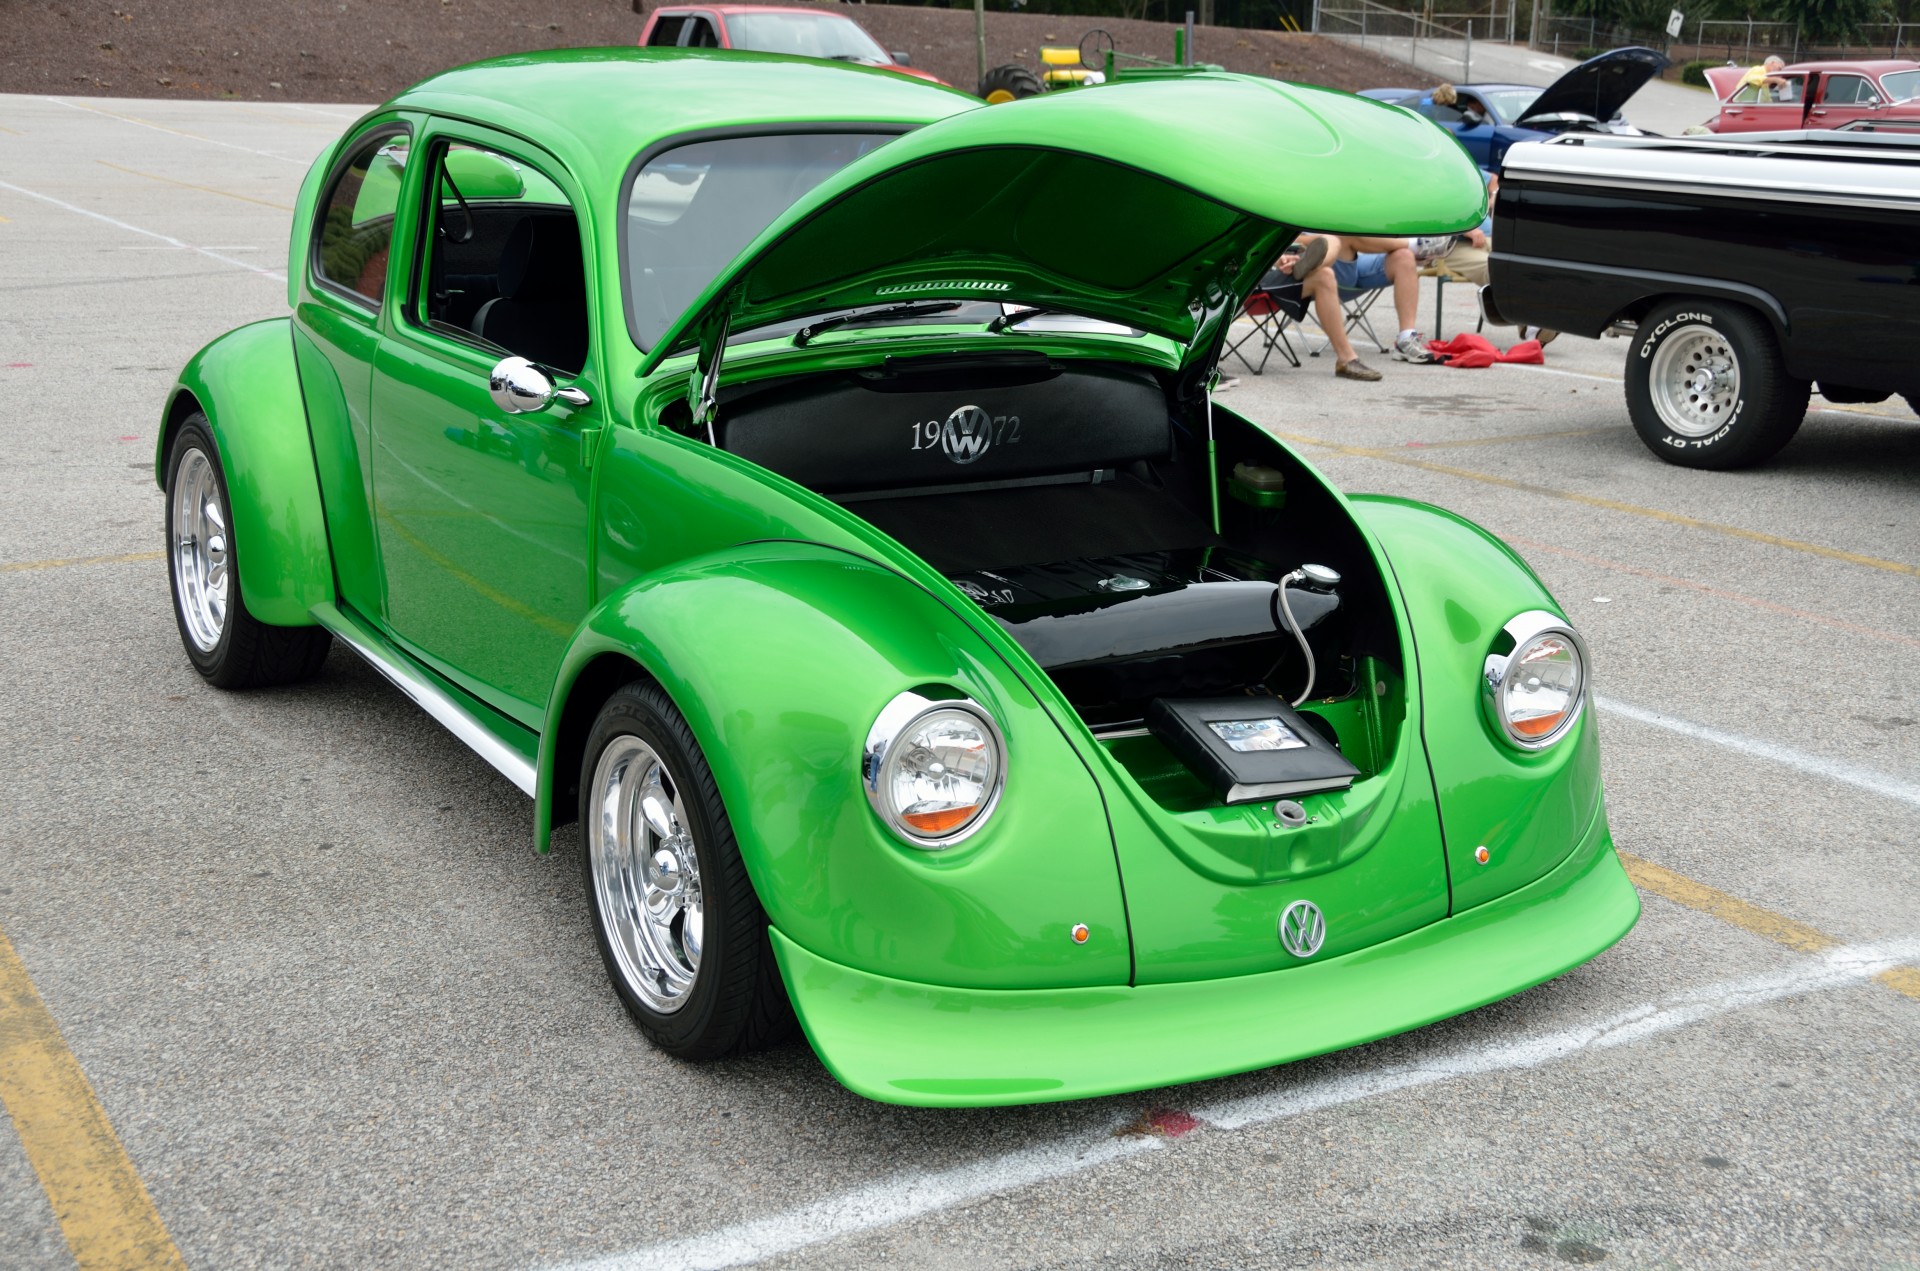 Restored Volkswagen Beetle at classic show